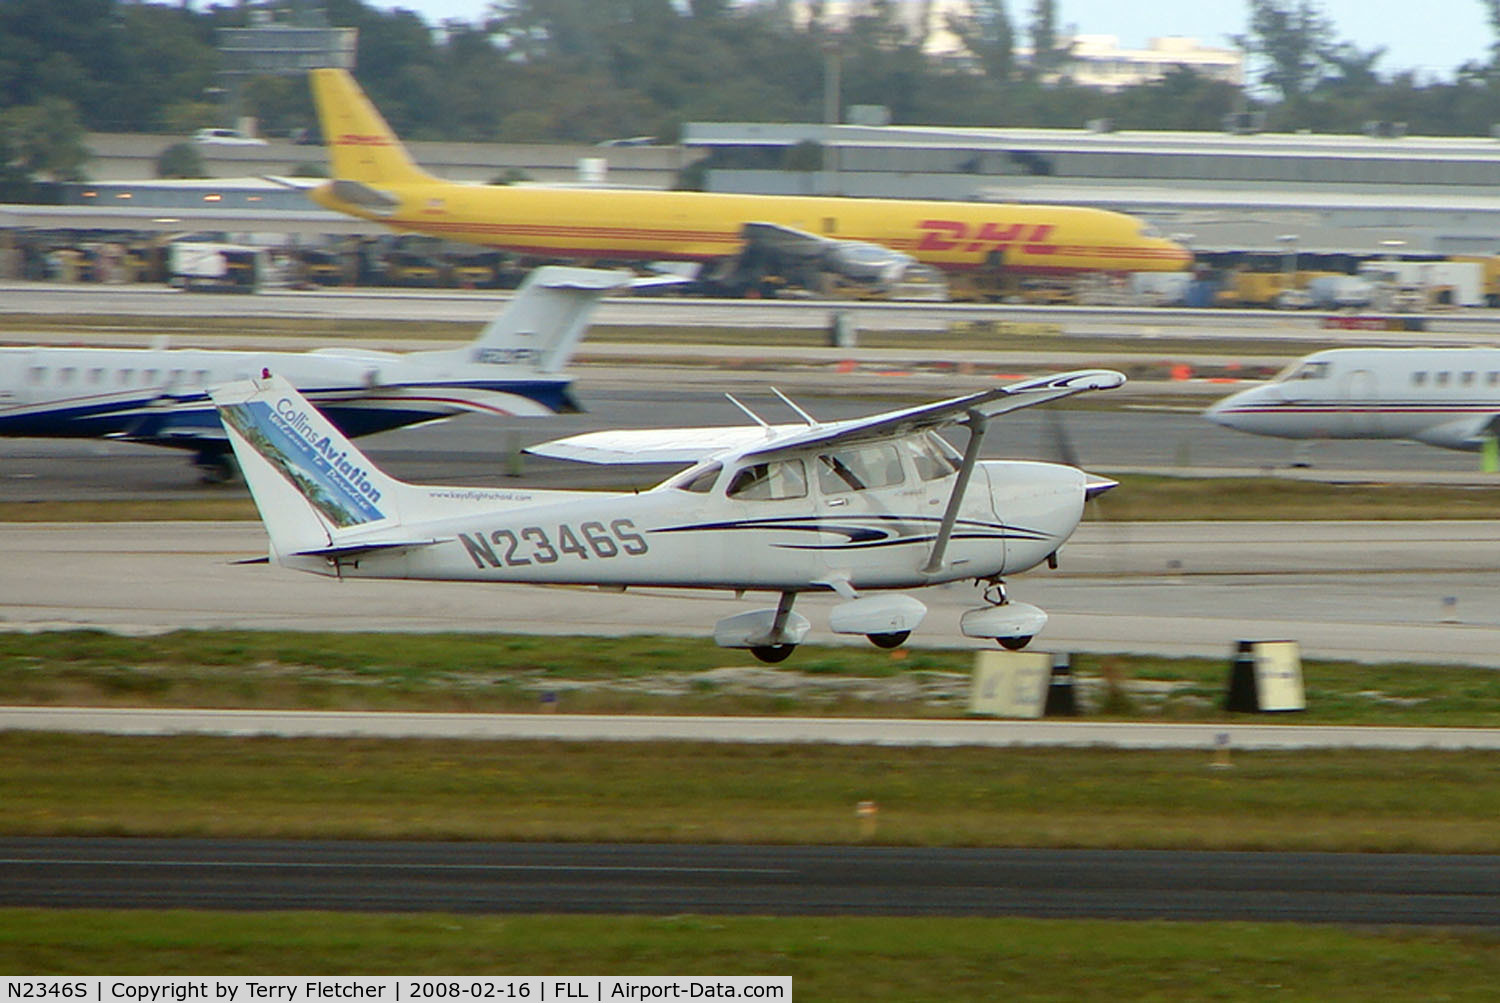 N2346S, 2005 Cessna 172S C/N 172S9999, Cessna 172S lands on the GA runway at FLL